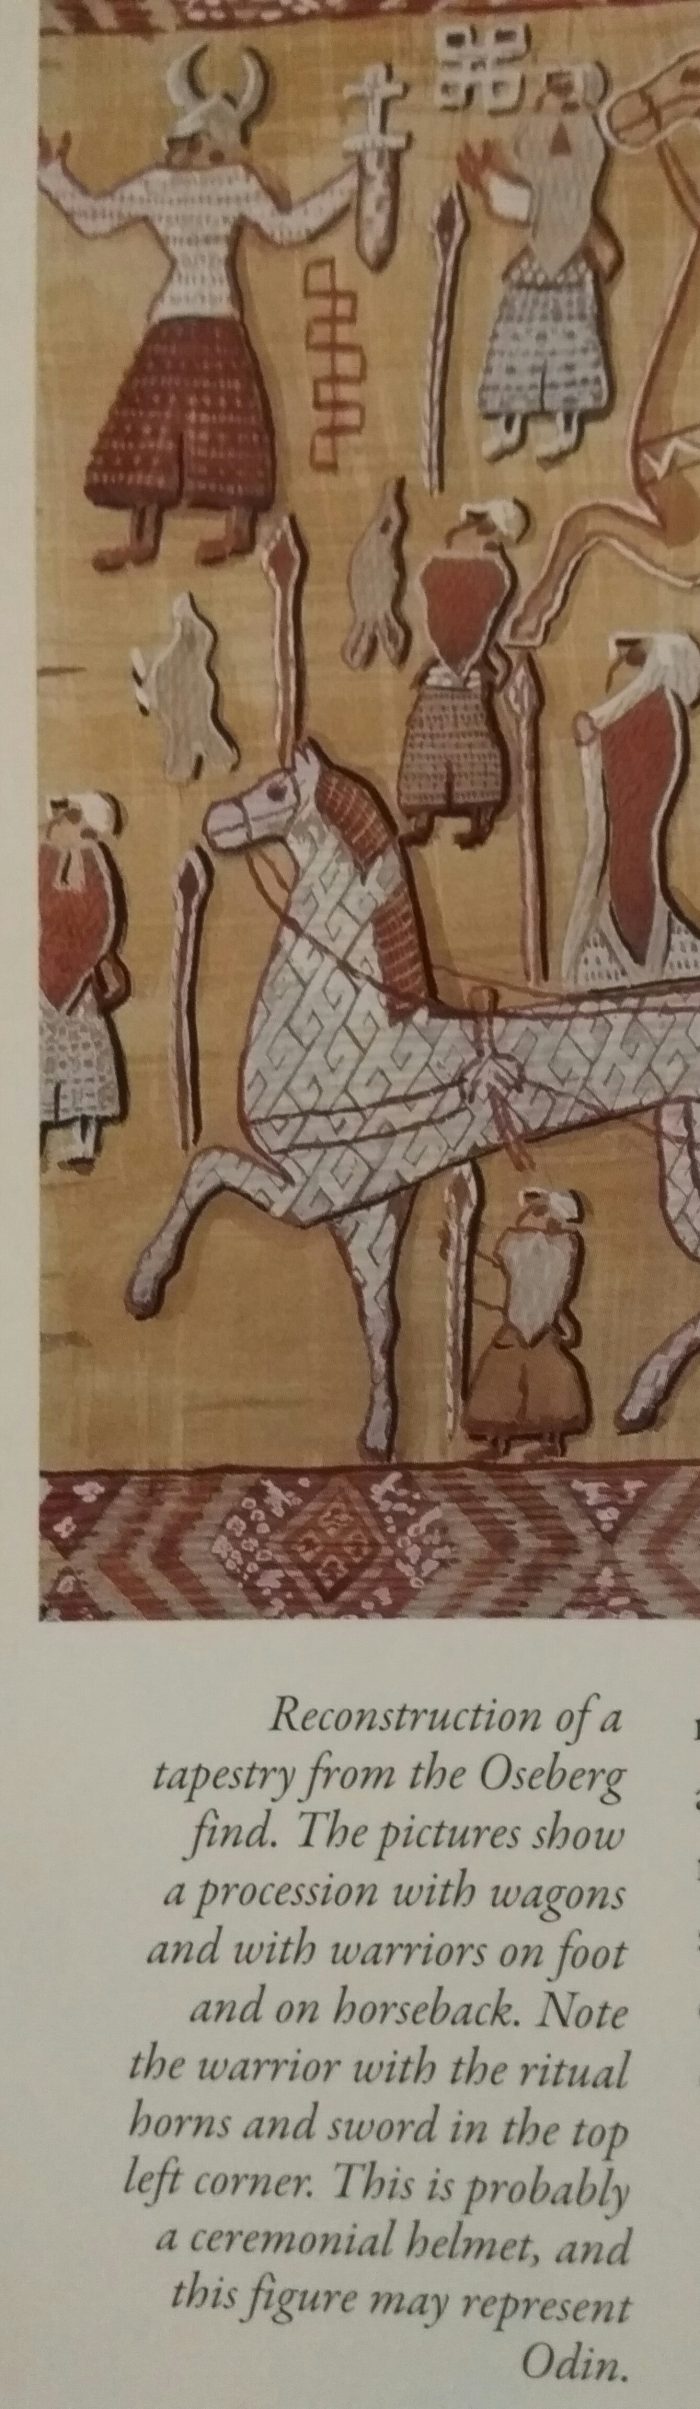 Oseberg tapestry, Vikings at War, Hjardar, Vike. Sarah Dahl, Horned Helmets, Vikings